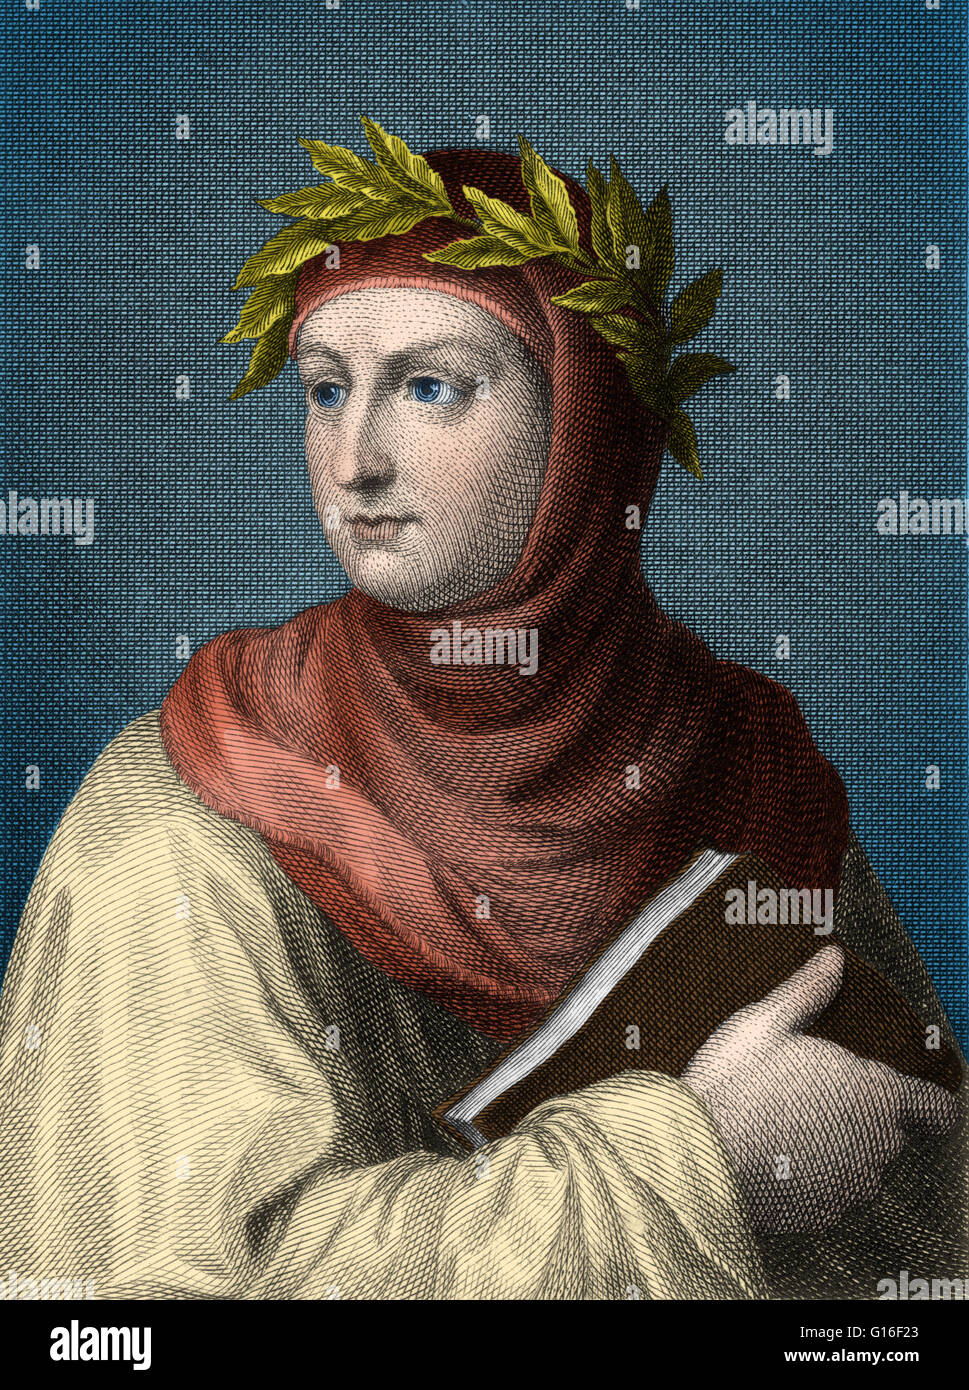 Giovanni Boccaccio (1313 - 21 Dezember 1375) war ein italienischer Schriftsteller, Dichter, Korrespondent von Petrarch und eine wichtige Renaissance-Humanist. Er war der Sohn eines Florentiner Kaufmanns, Boccaccino di Chellino, und eine unbekannte Frau; Er entstand wahrscheinlich aus w Stockfoto